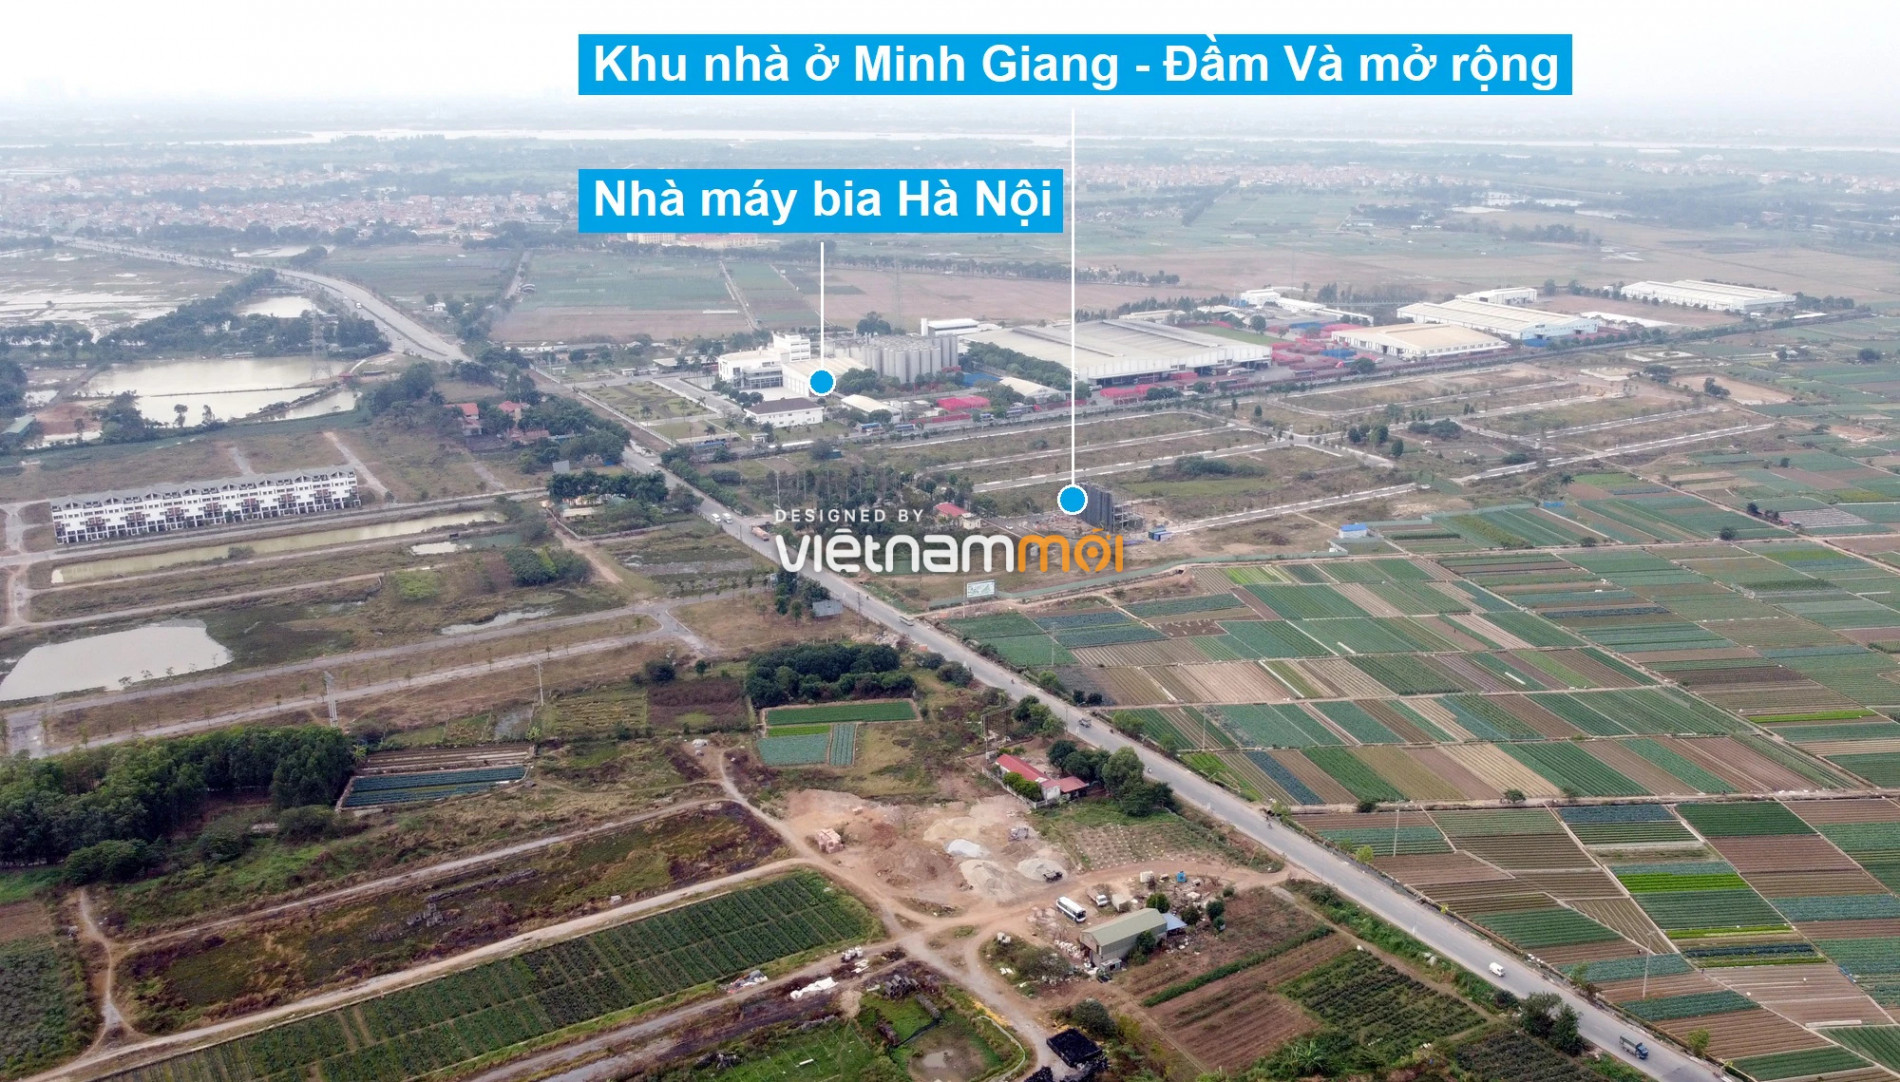 Toàn cảnh 6 dự án chậm triển khai ở huyện Mê Linh sắp tái triển khai - Ảnh 7.